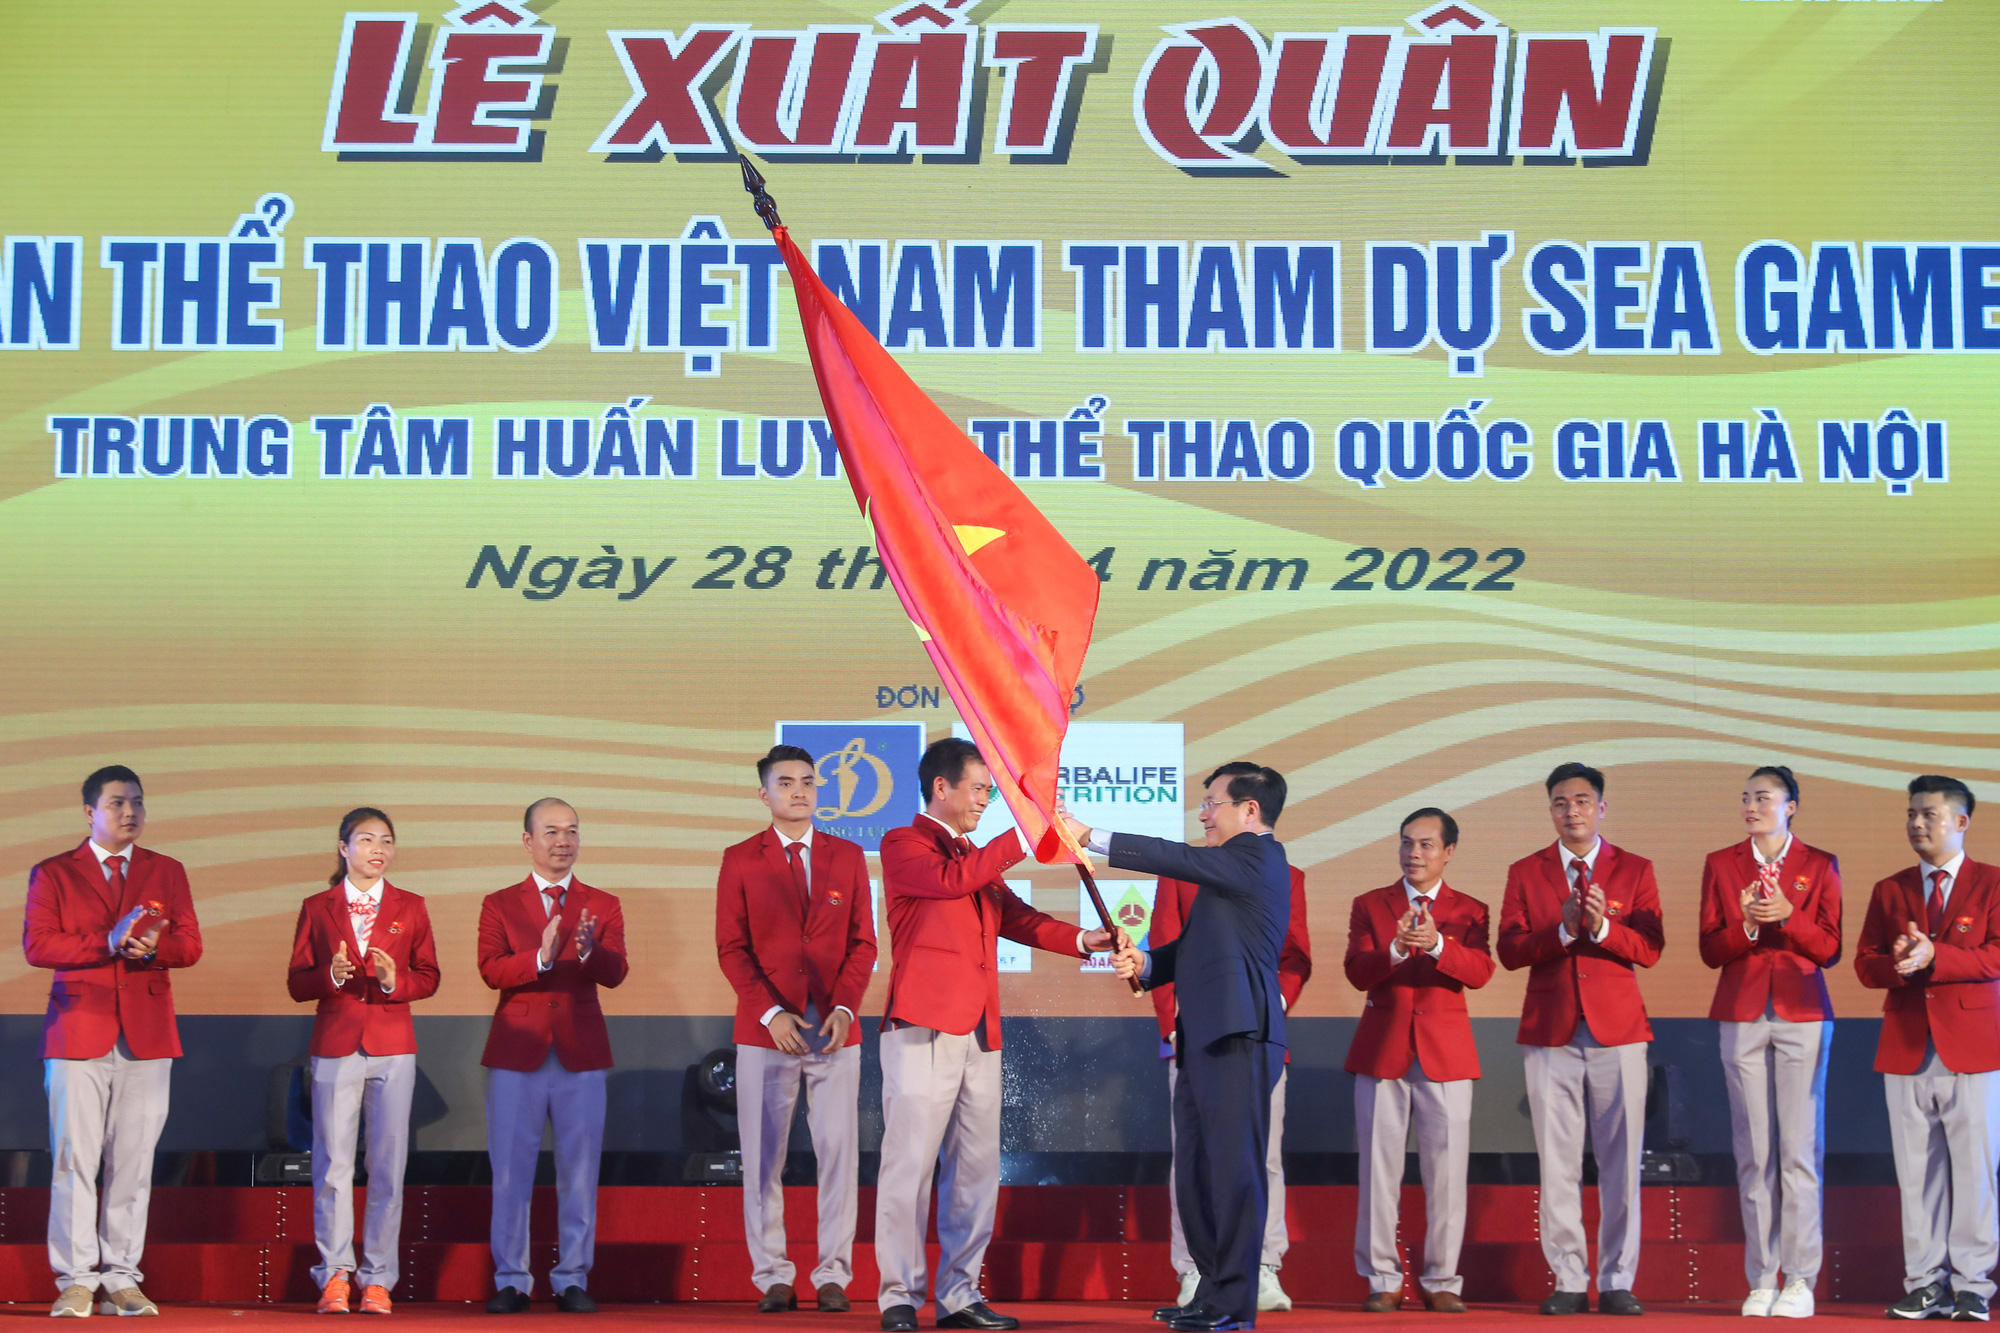 Phó Thủ tướng thường trực Chính phủ Phạm Bình Minh giao 4 nhiệm vụ quan trọng cho đoàn Thể thao Việt Nam trước thềm SEA Games 31